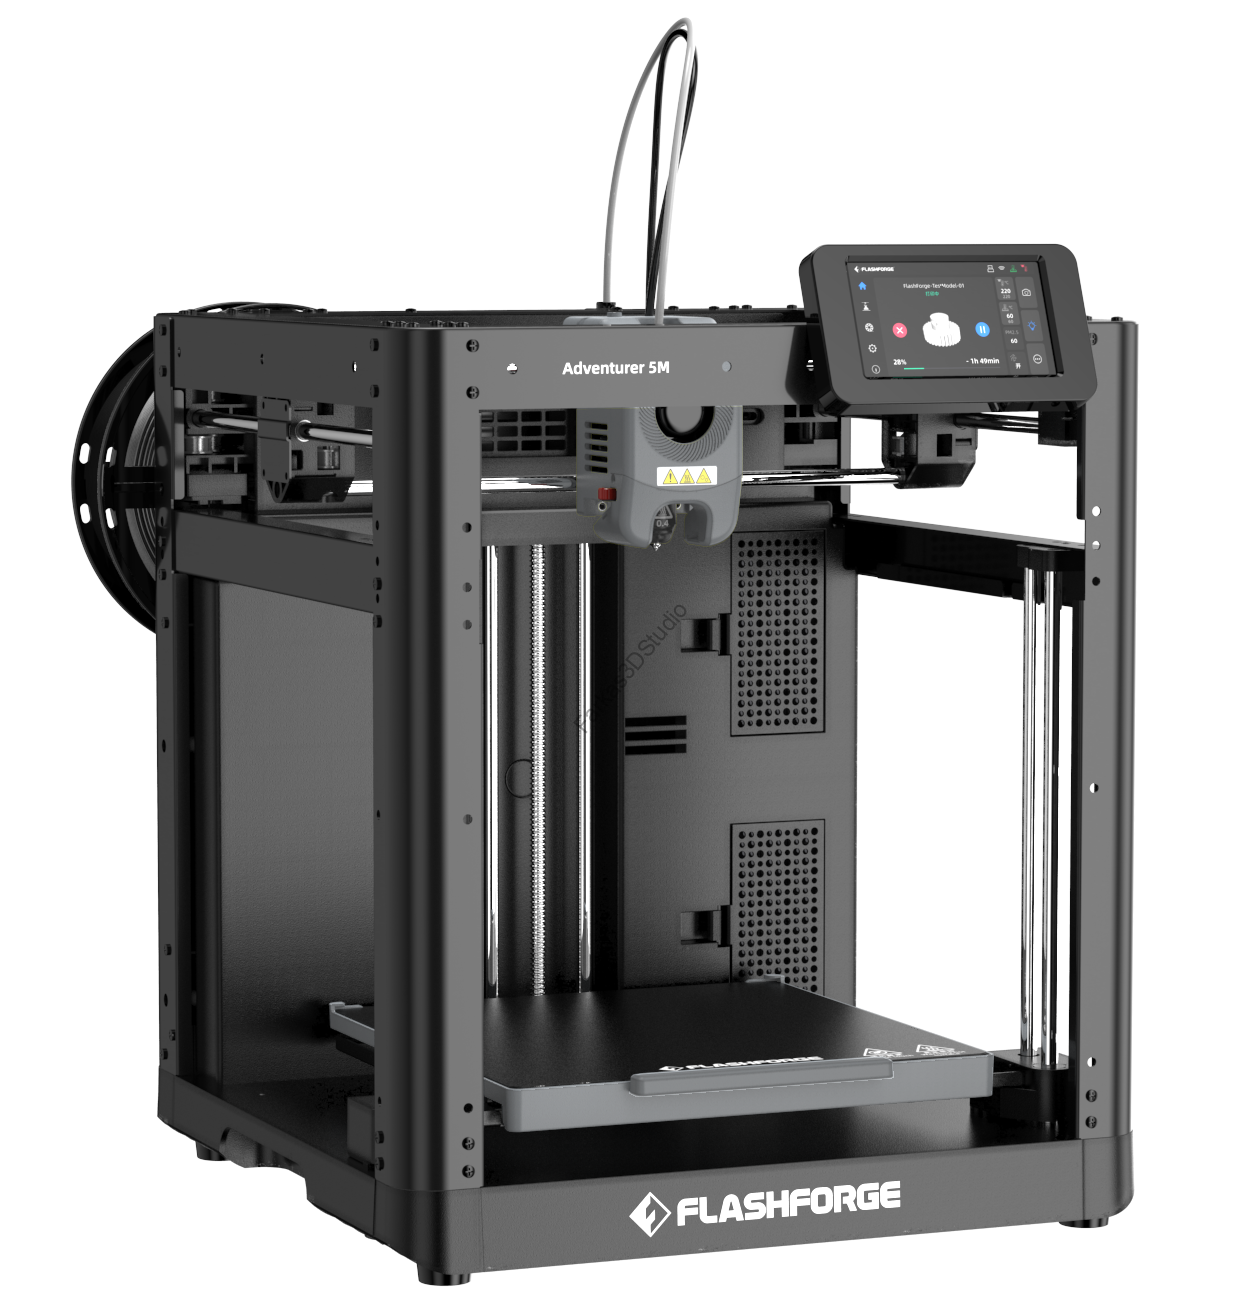 Előrendelés - Flashforge Adventurer 5M 3D nyomtató